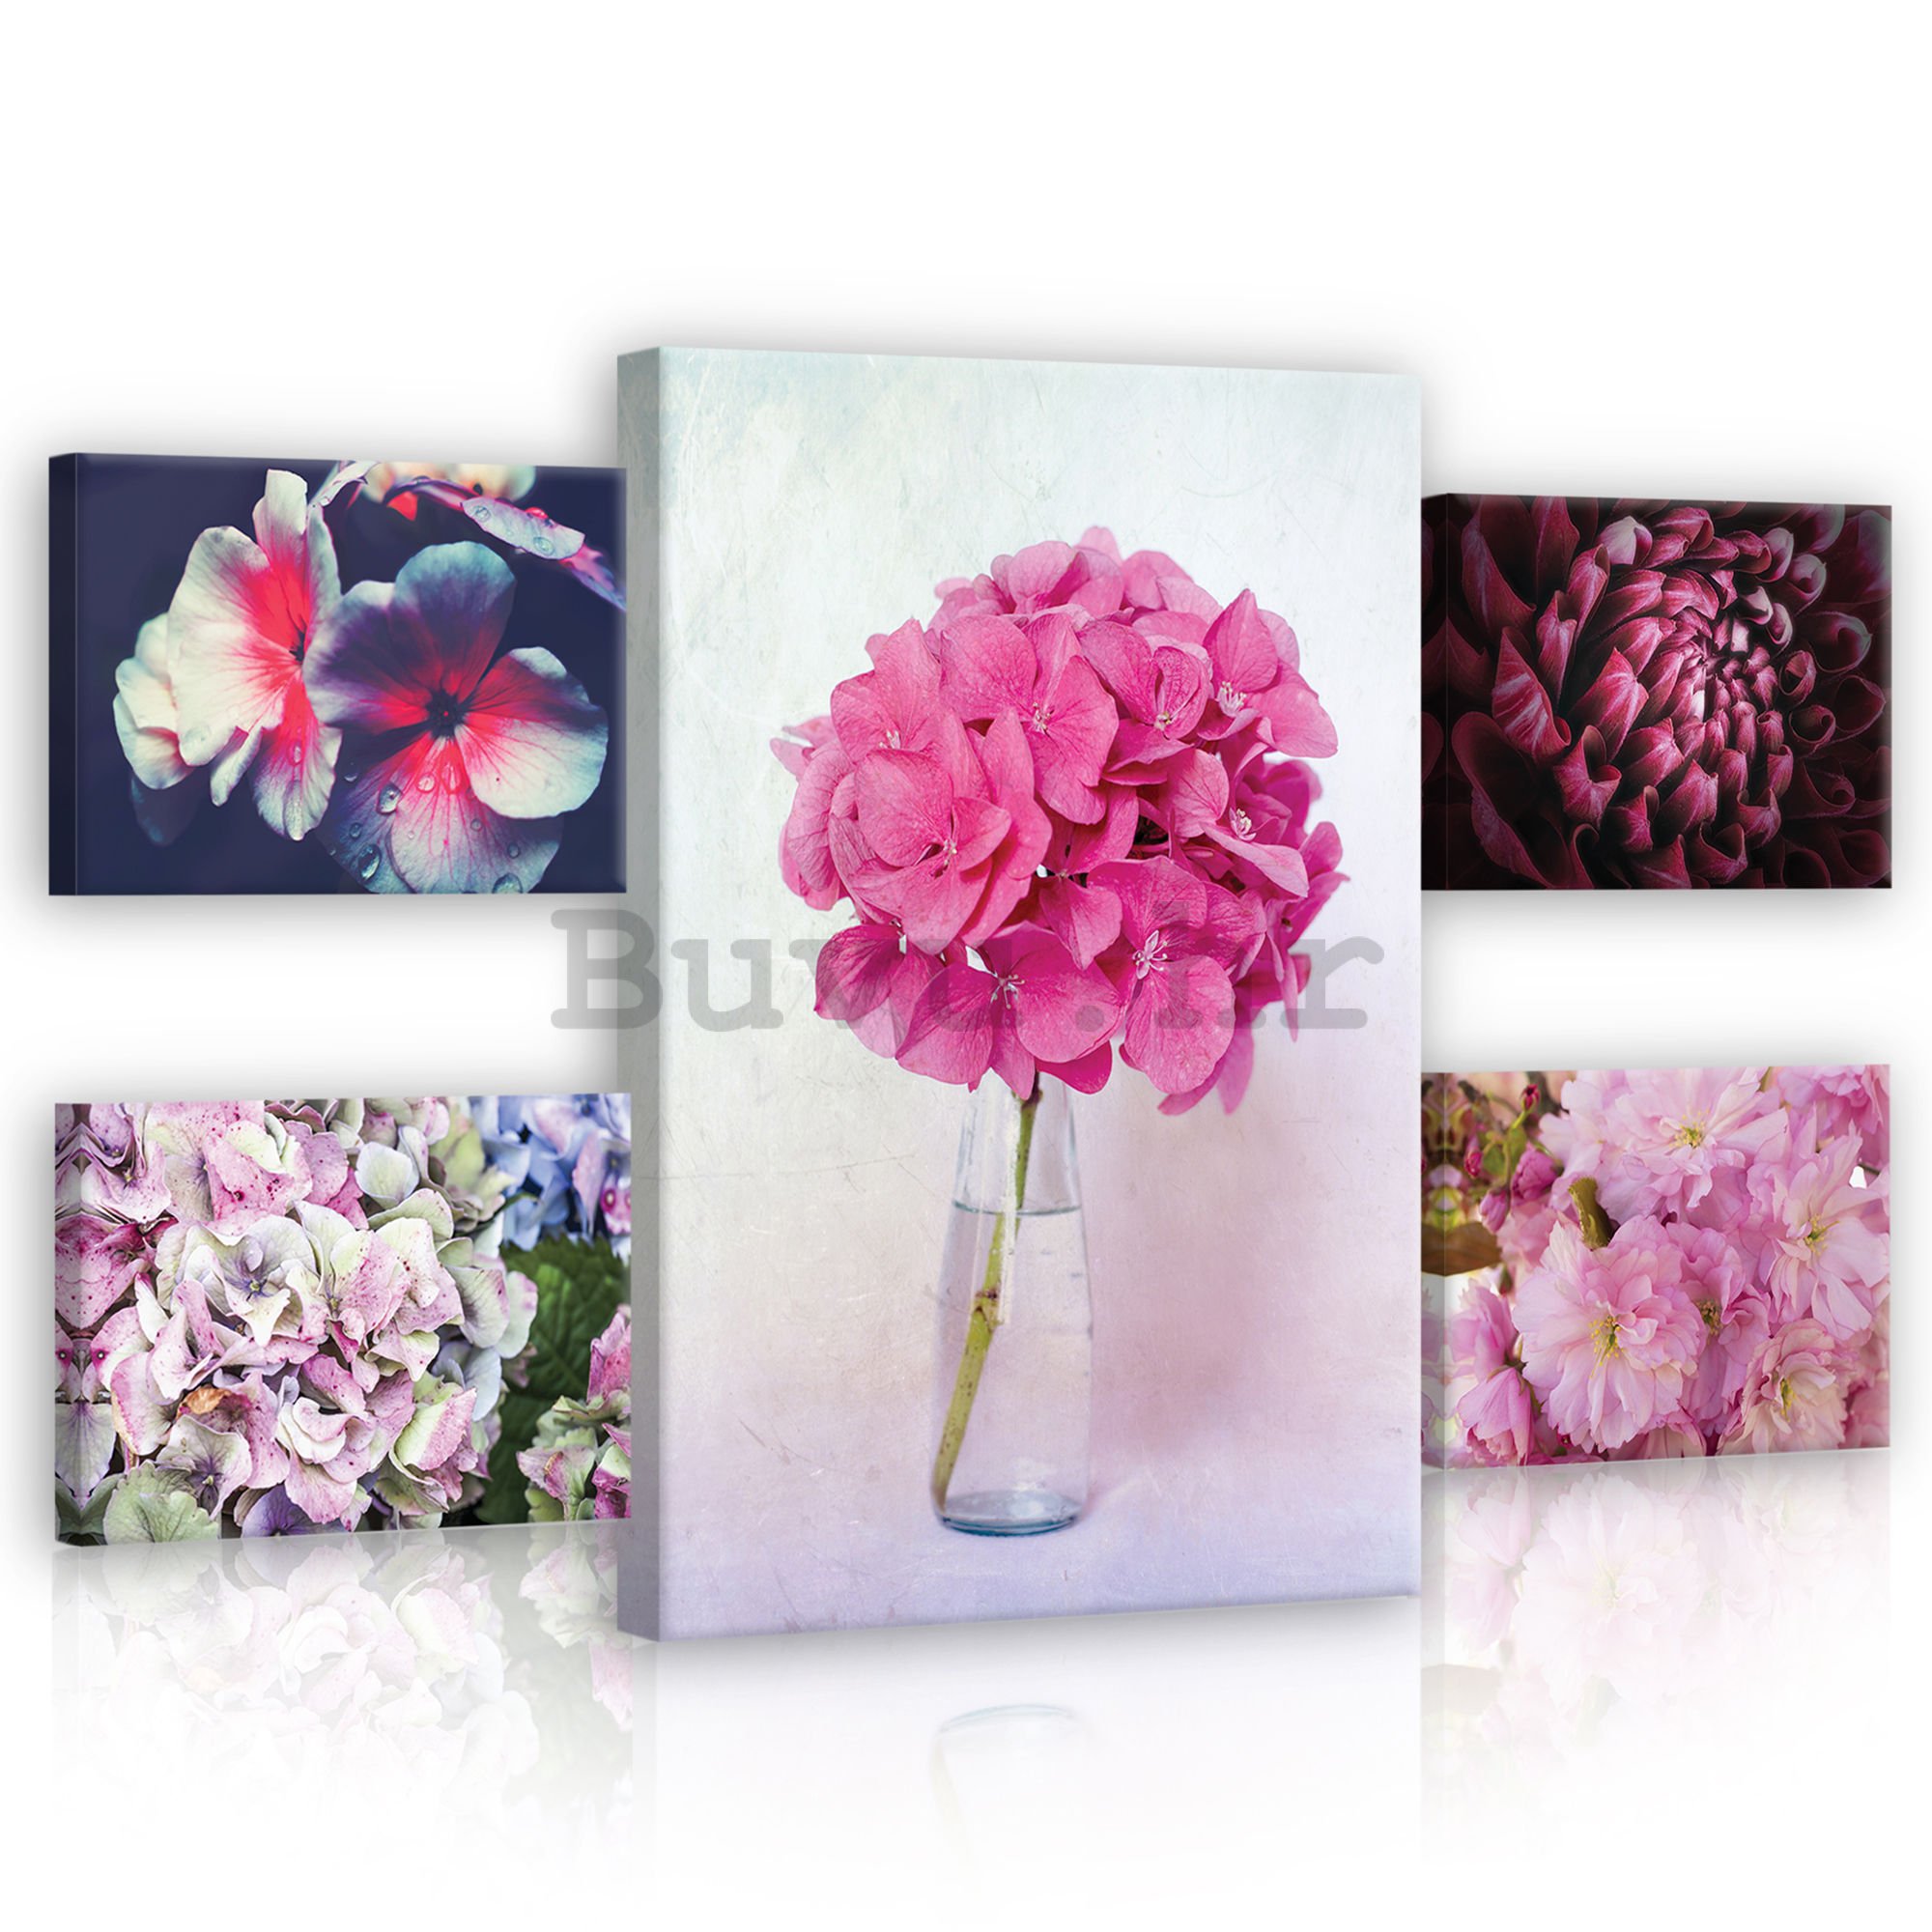 Slika na platnu: Ružičasti cvjetovi - set 1kom 70x50 cm i 4kom 32,4x22,8 cm